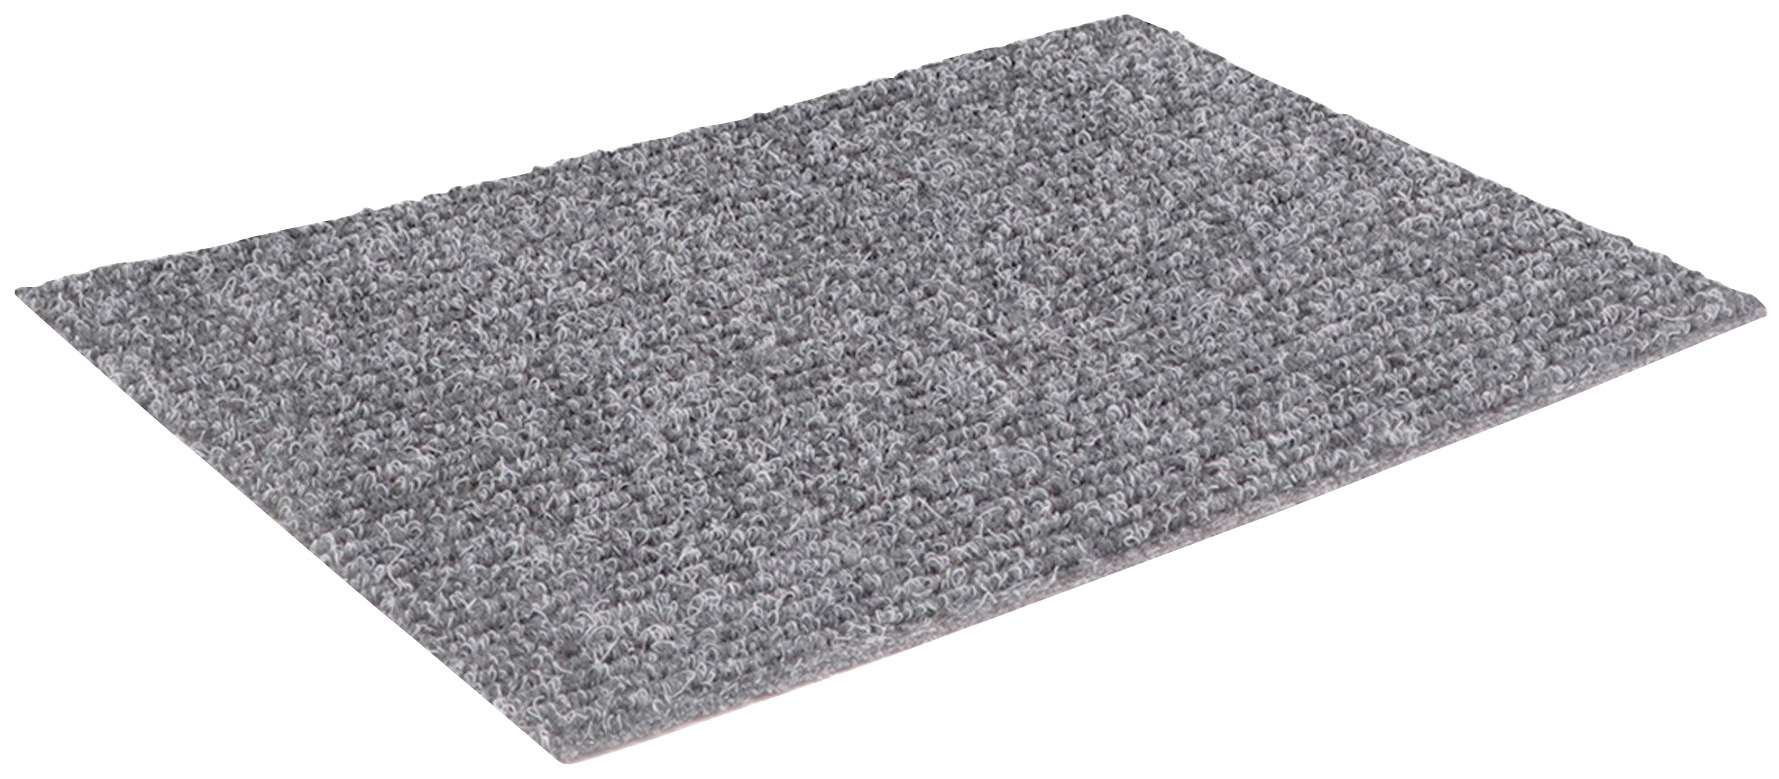 Rips Nadelfilz Teppich-Boden GLADIATOR als Meterware - Grau, 2,00m x 3,00m, Schwer Entflammbarer, Gerippter Bodenbelag